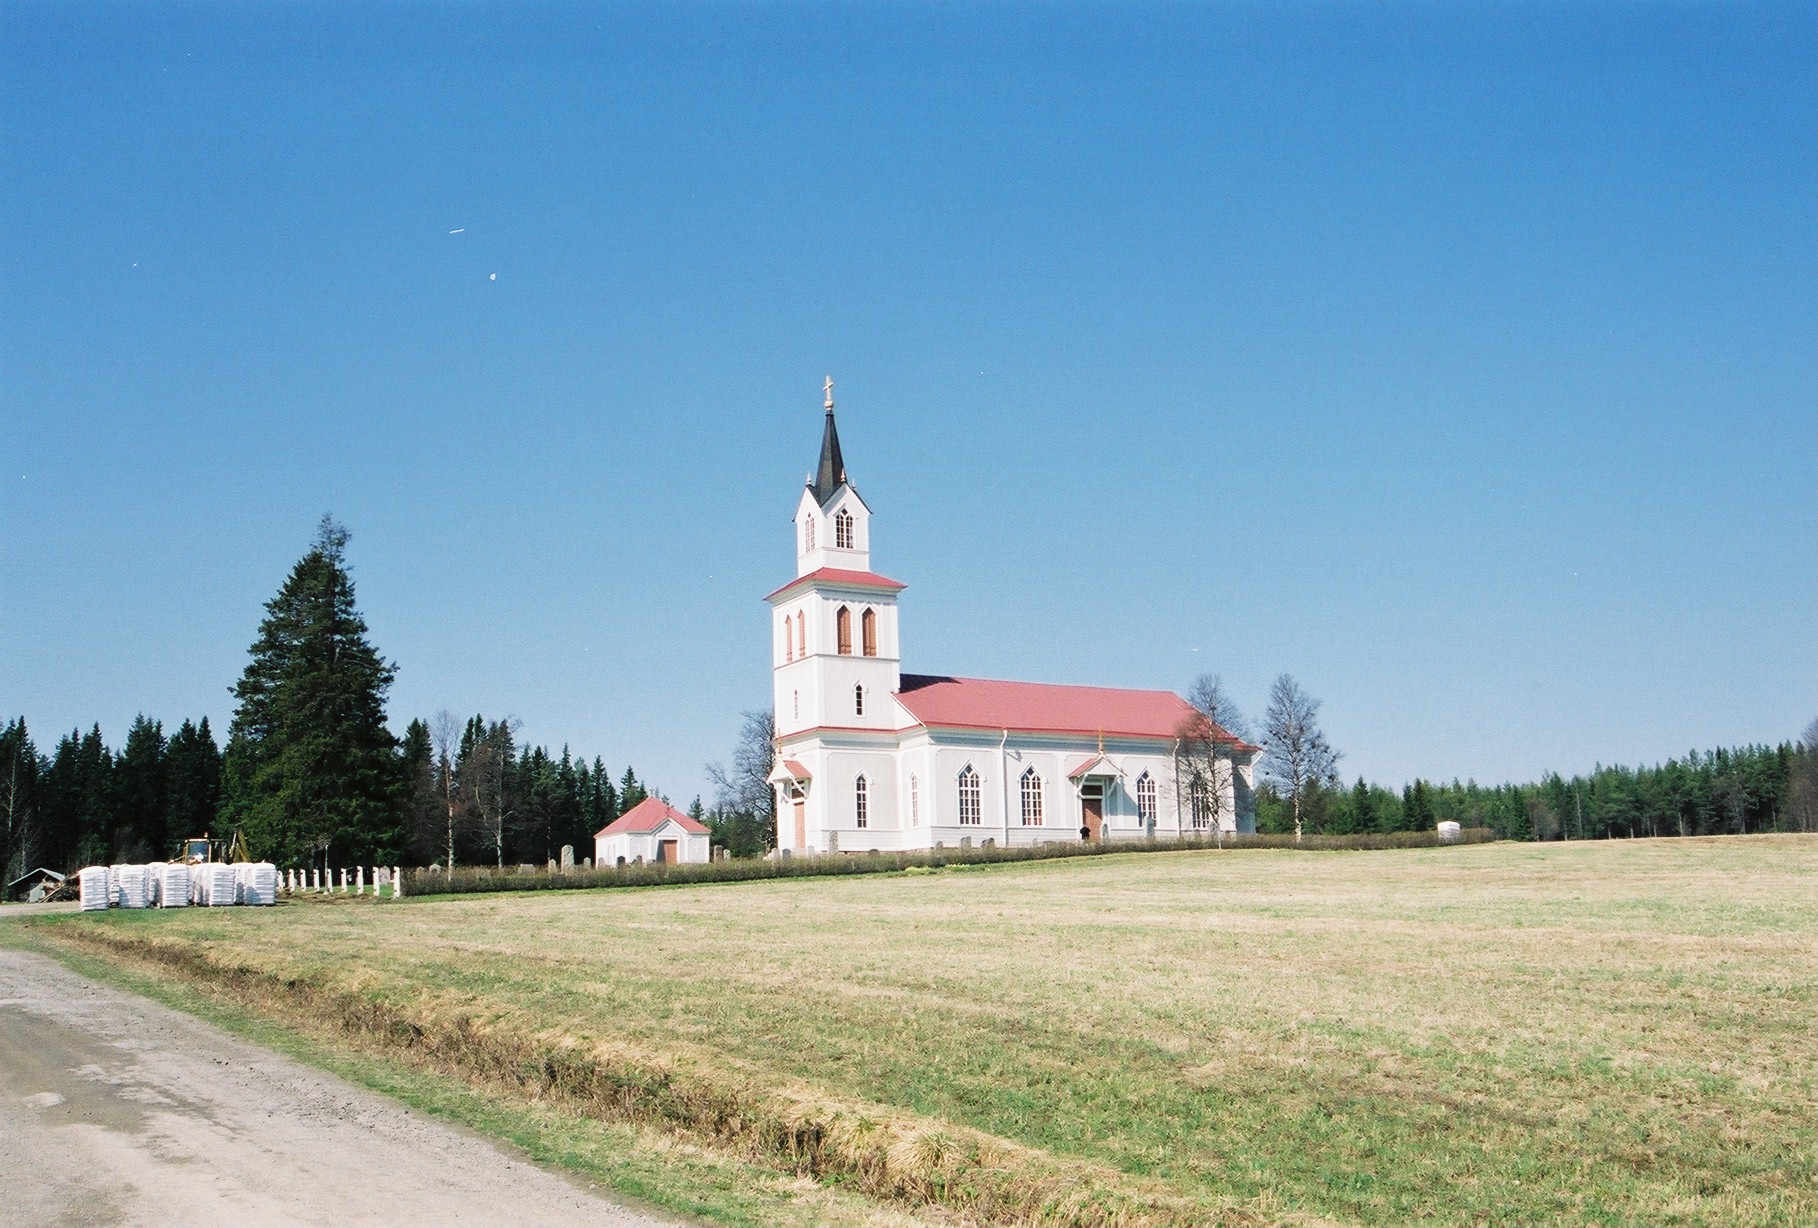 Åsarne gamla kyrka med omgivande kyrkogård sedd från öst.


Kyrkan inventerades mellan 2004-2005 av Martin Lagergren &
Emelie Petersson vid Jämtlands läns museum, de var också fotografer till bilderna. 